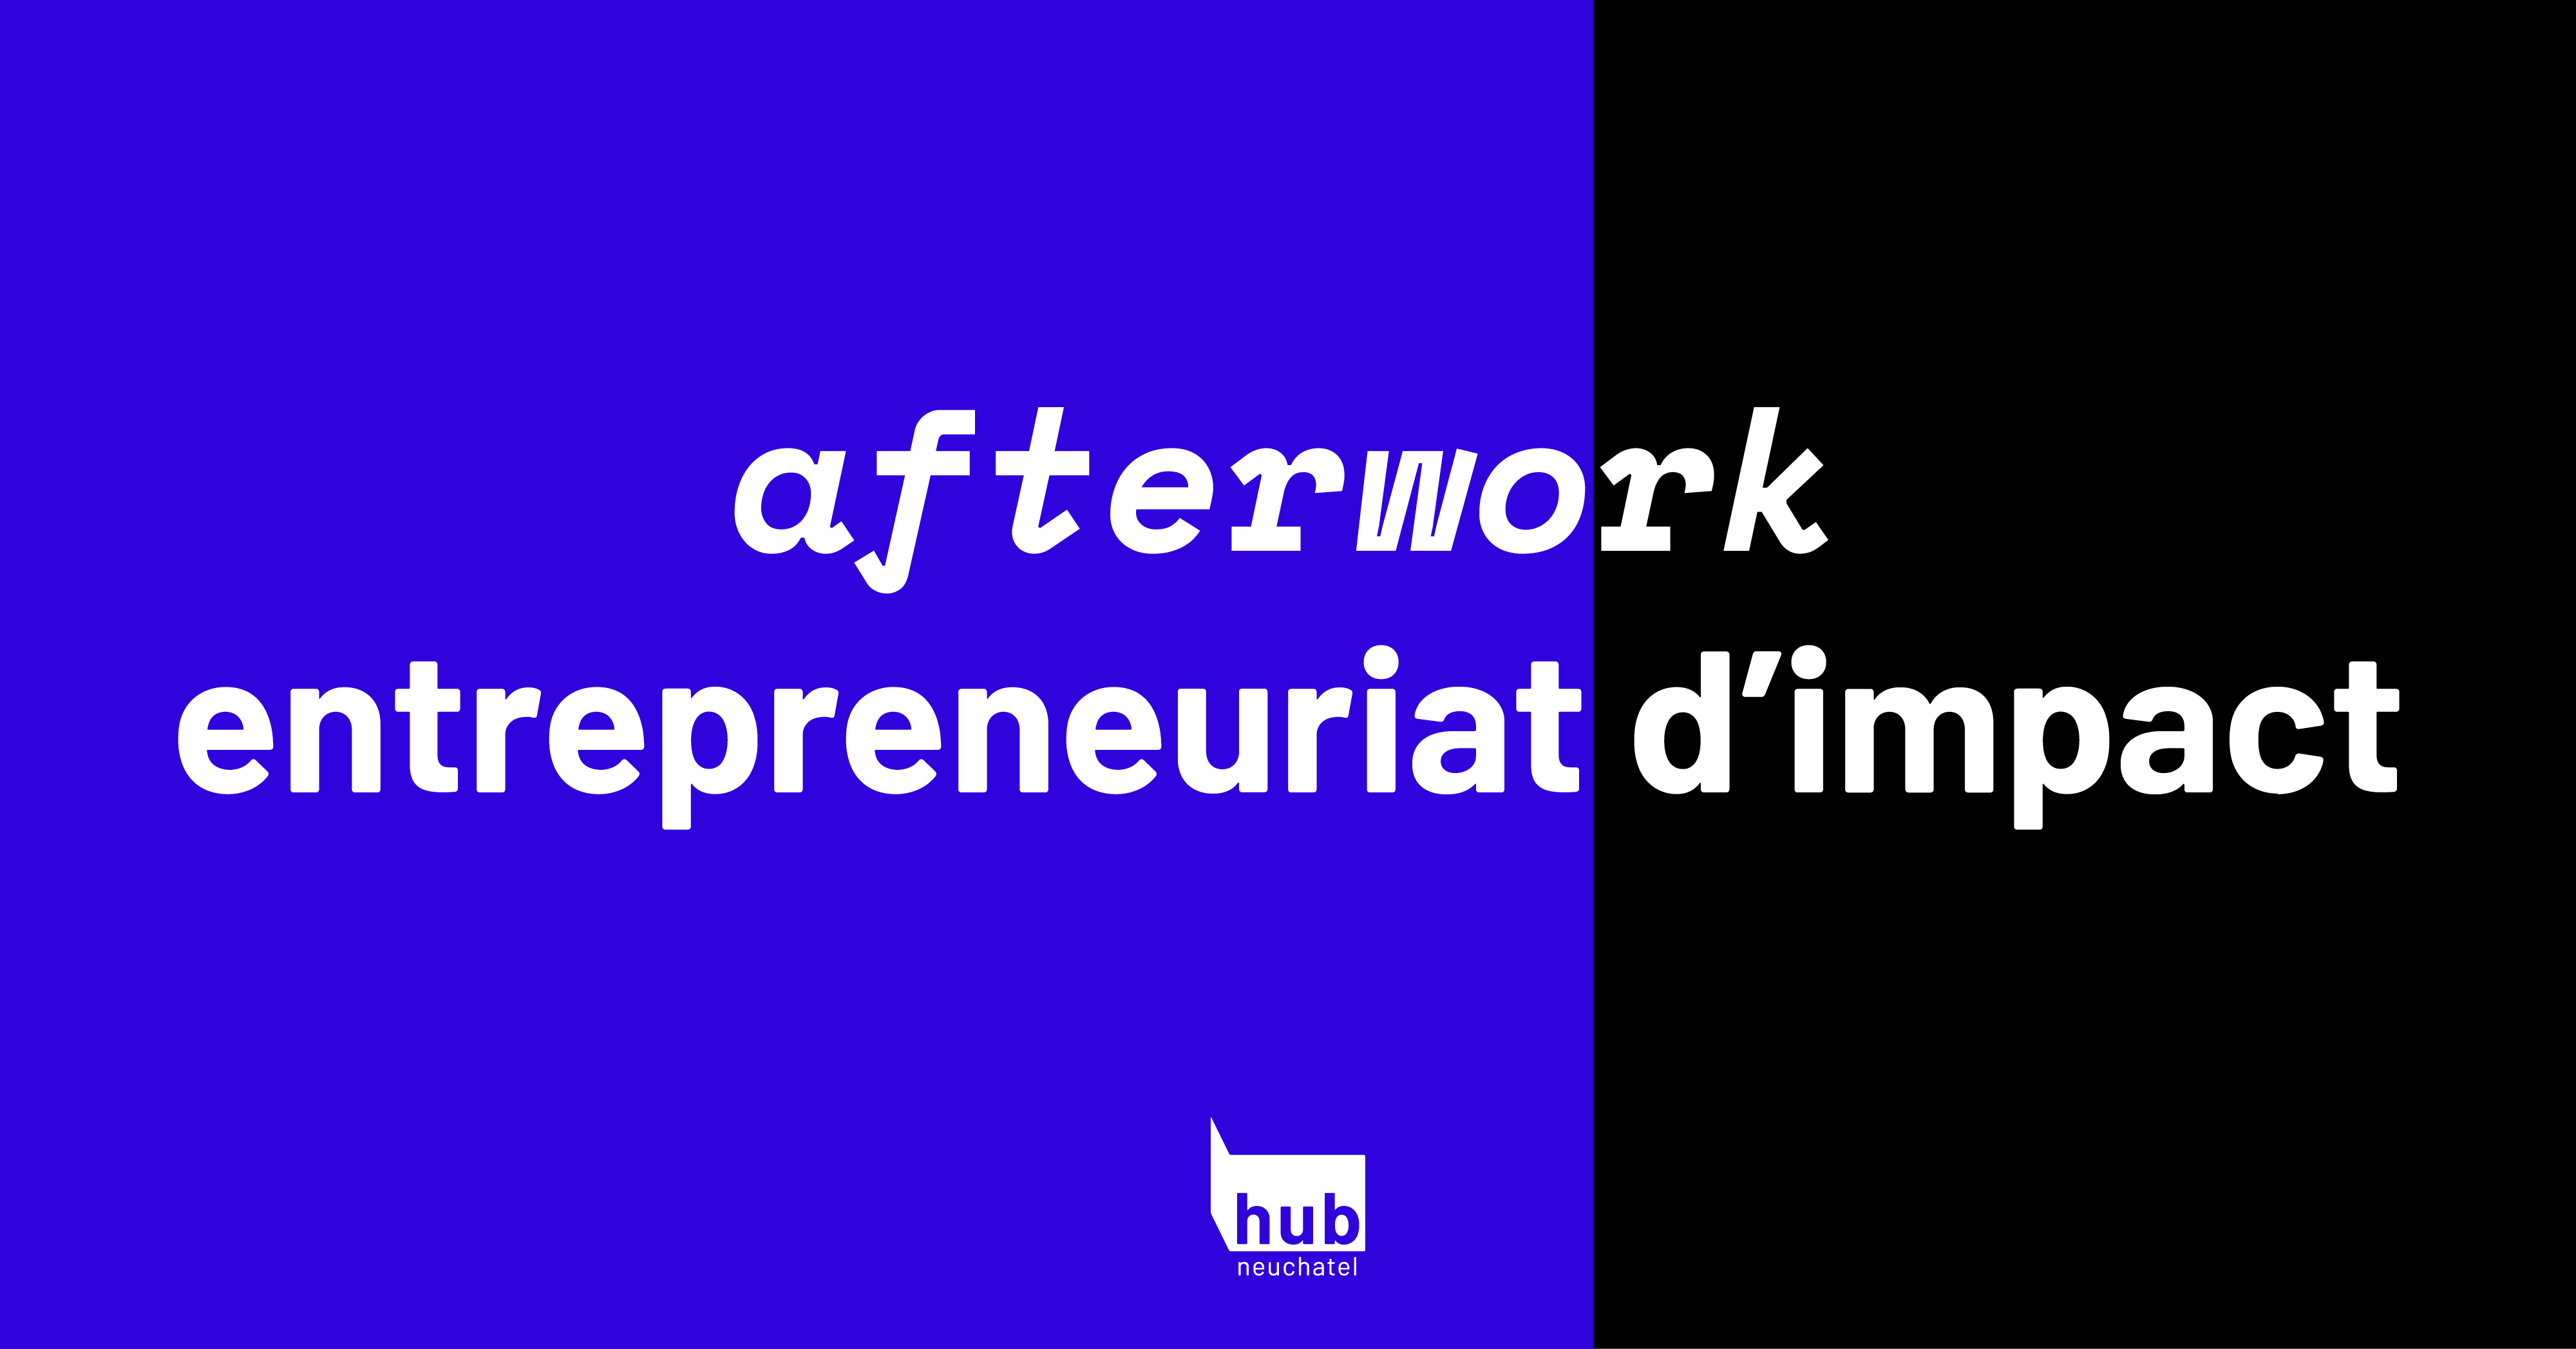 !REPORTE EN SEPTEMBRE! : Afterwork Entrepreneuriat d'impact